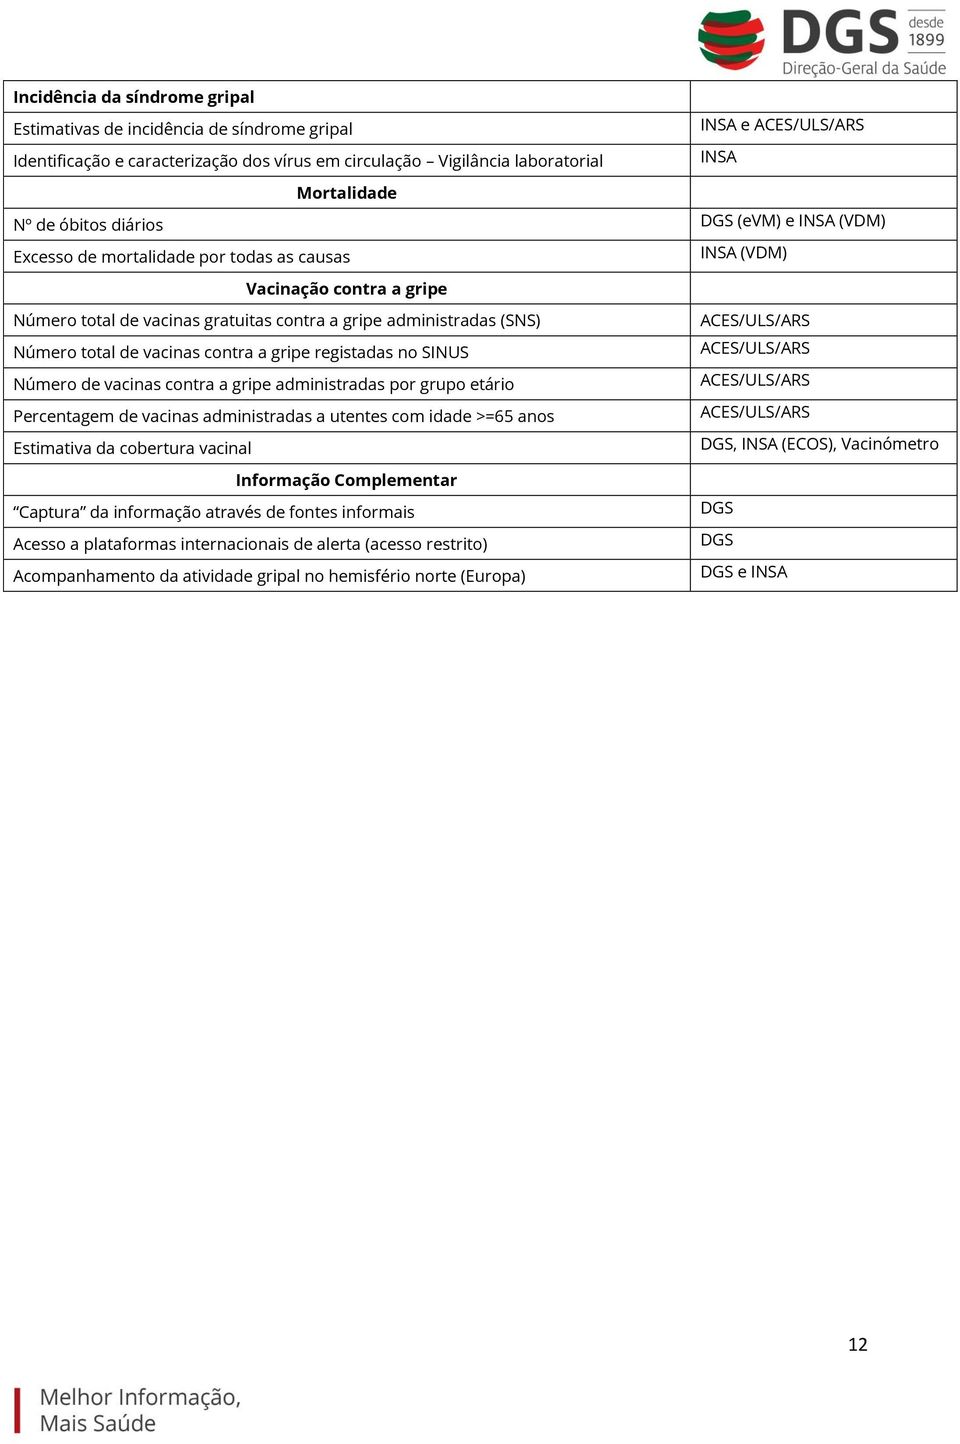 Número total de vacinas contra a gripe registadas no SINUS ACES/ULS/ARS Número de vacinas contra a gripe administradas por grupo etário ACES/ULS/ARS Percentagem de vacinas administradas a utentes com